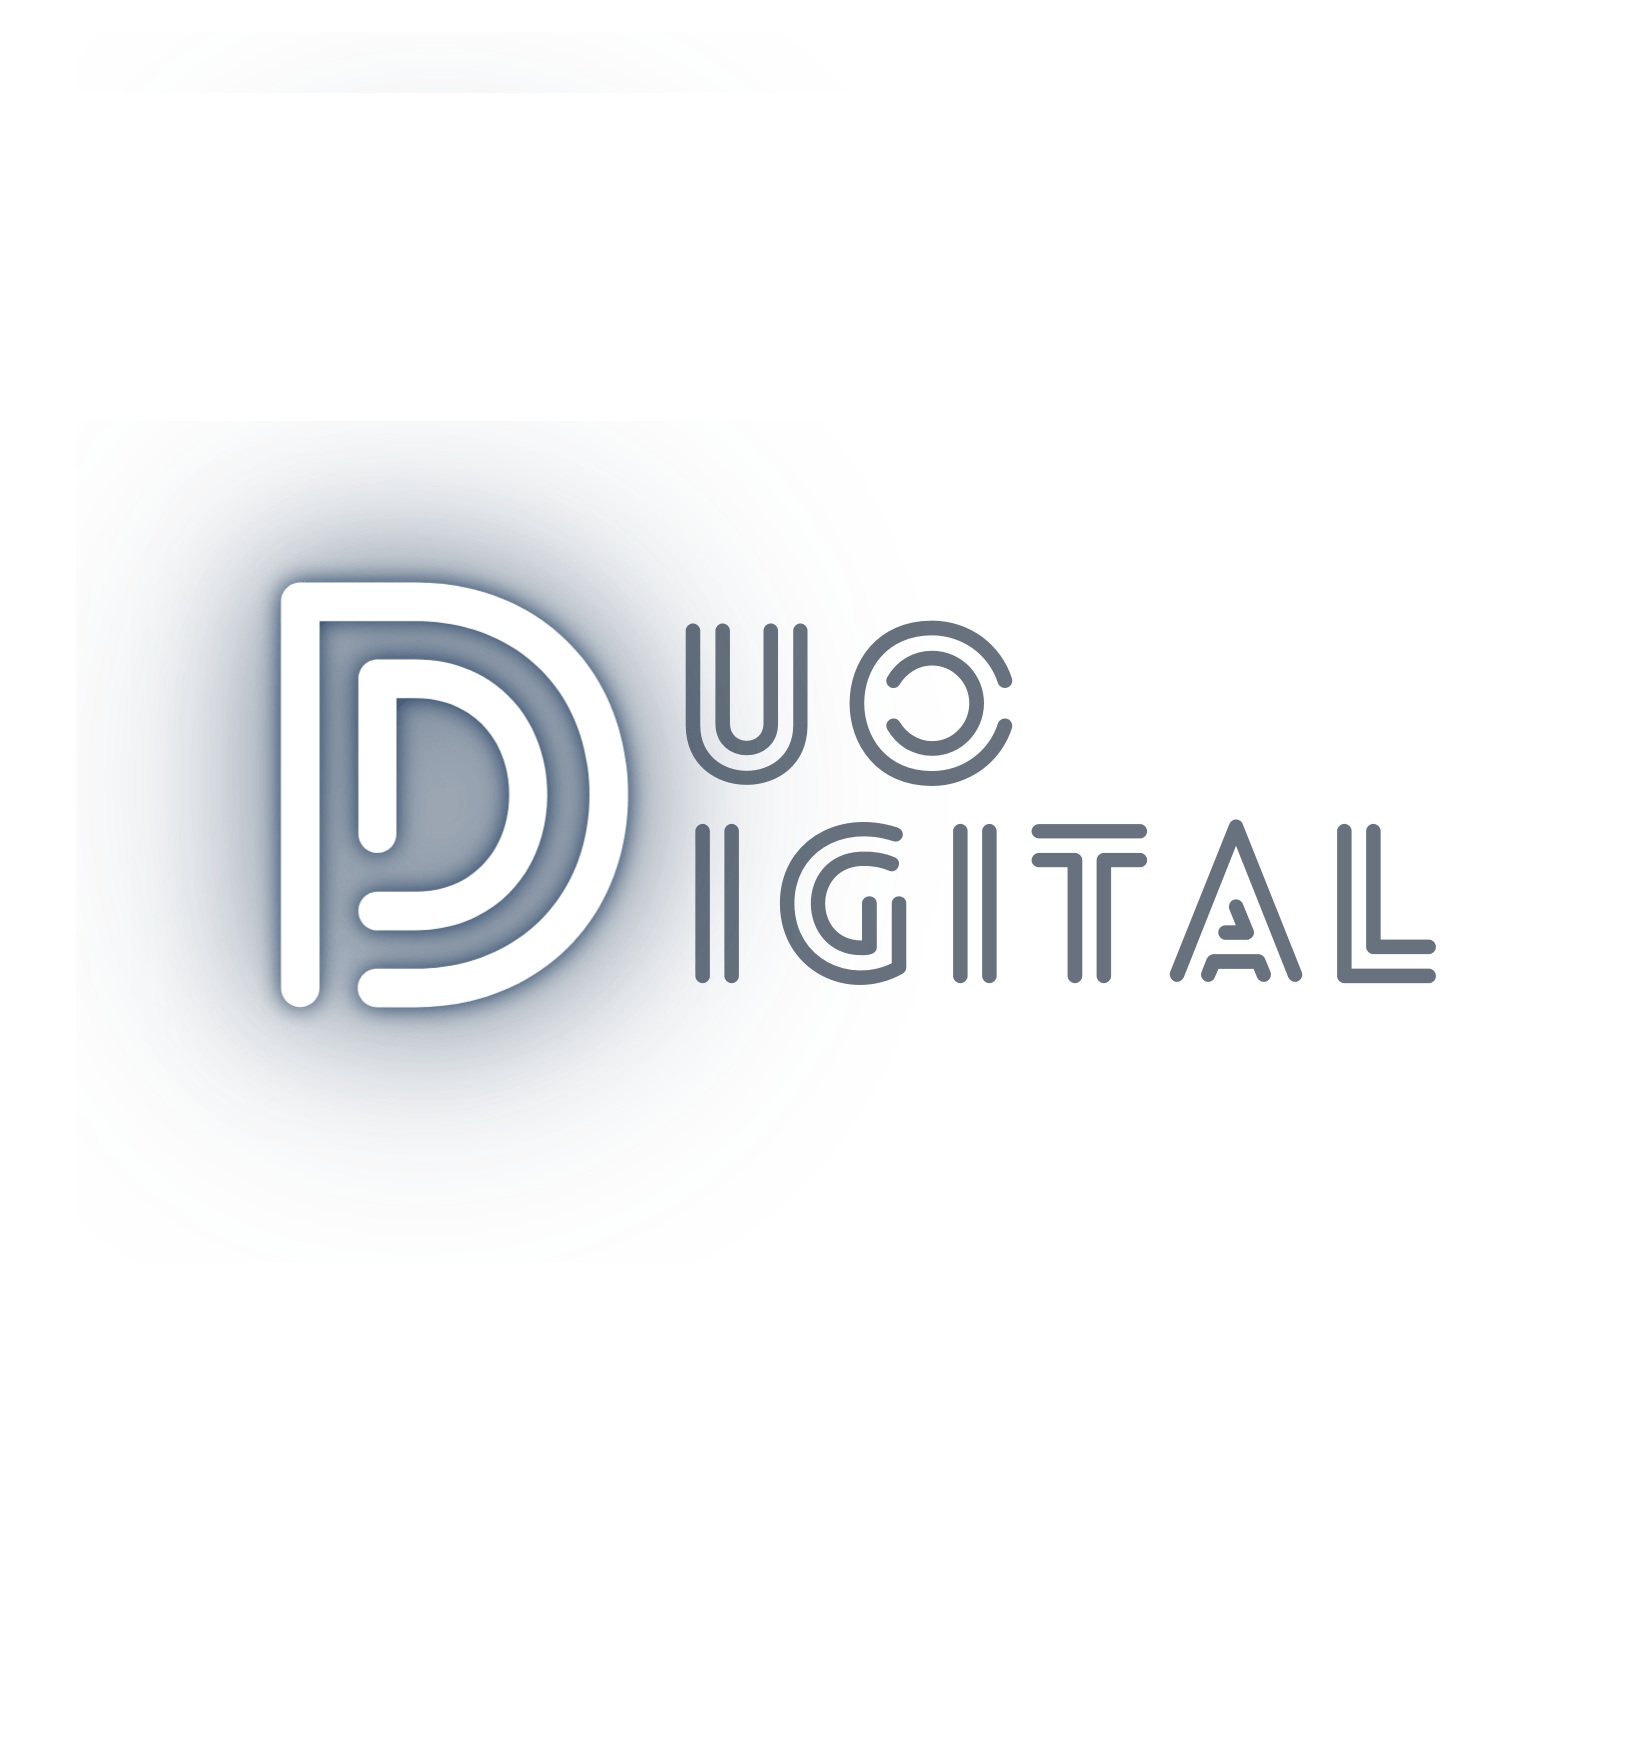 Logo of DUO Digital